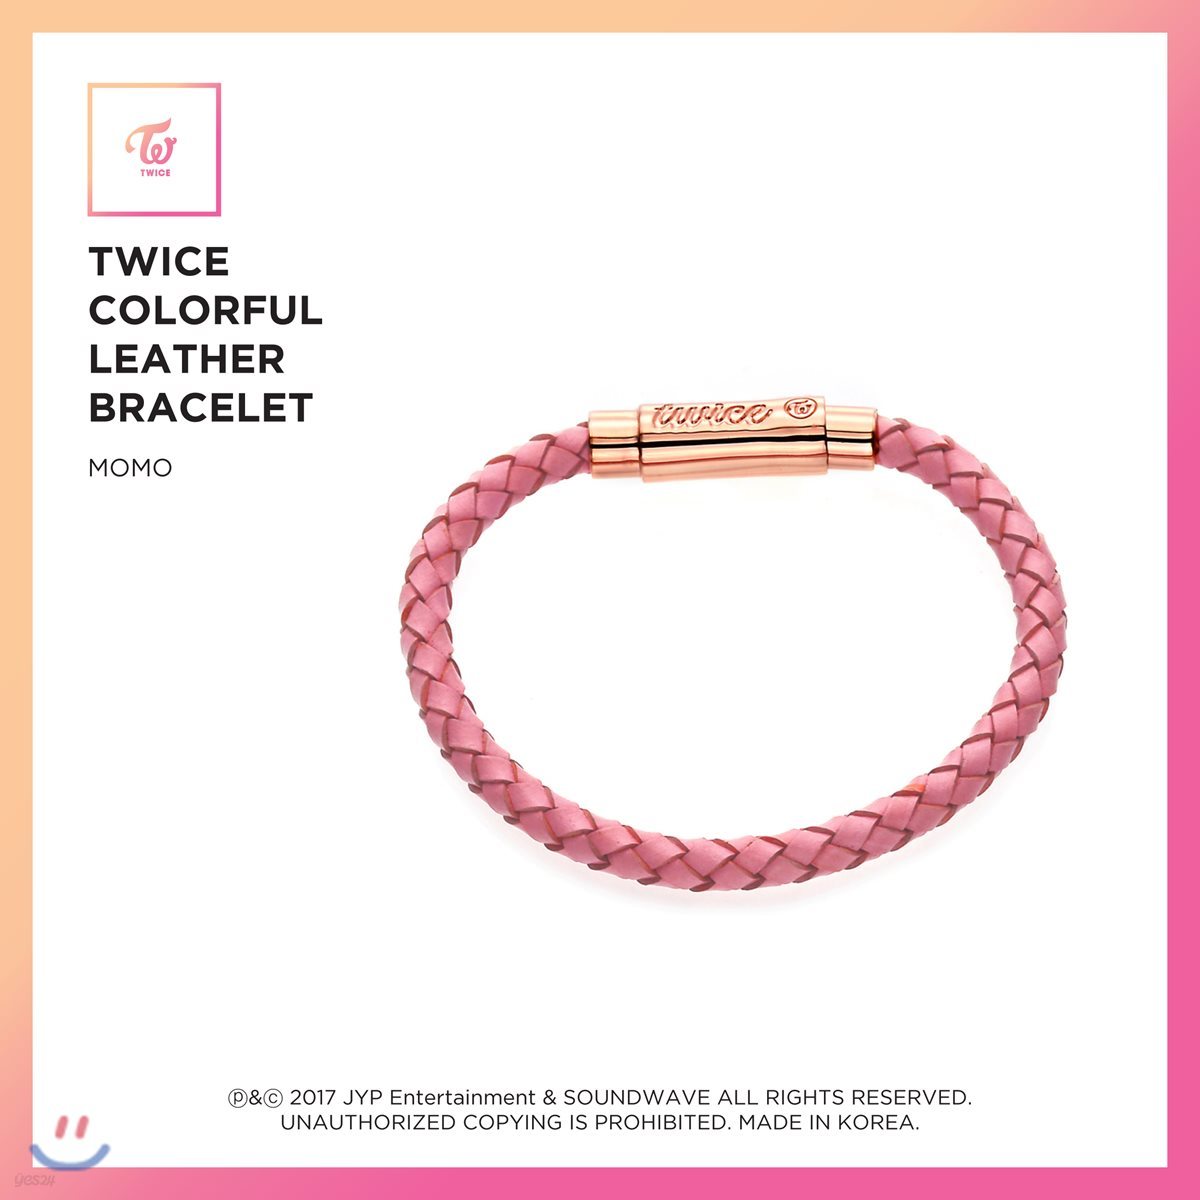 트와이스 (TWICE) - TWICE Colorful Leather Bracelet [Momo]